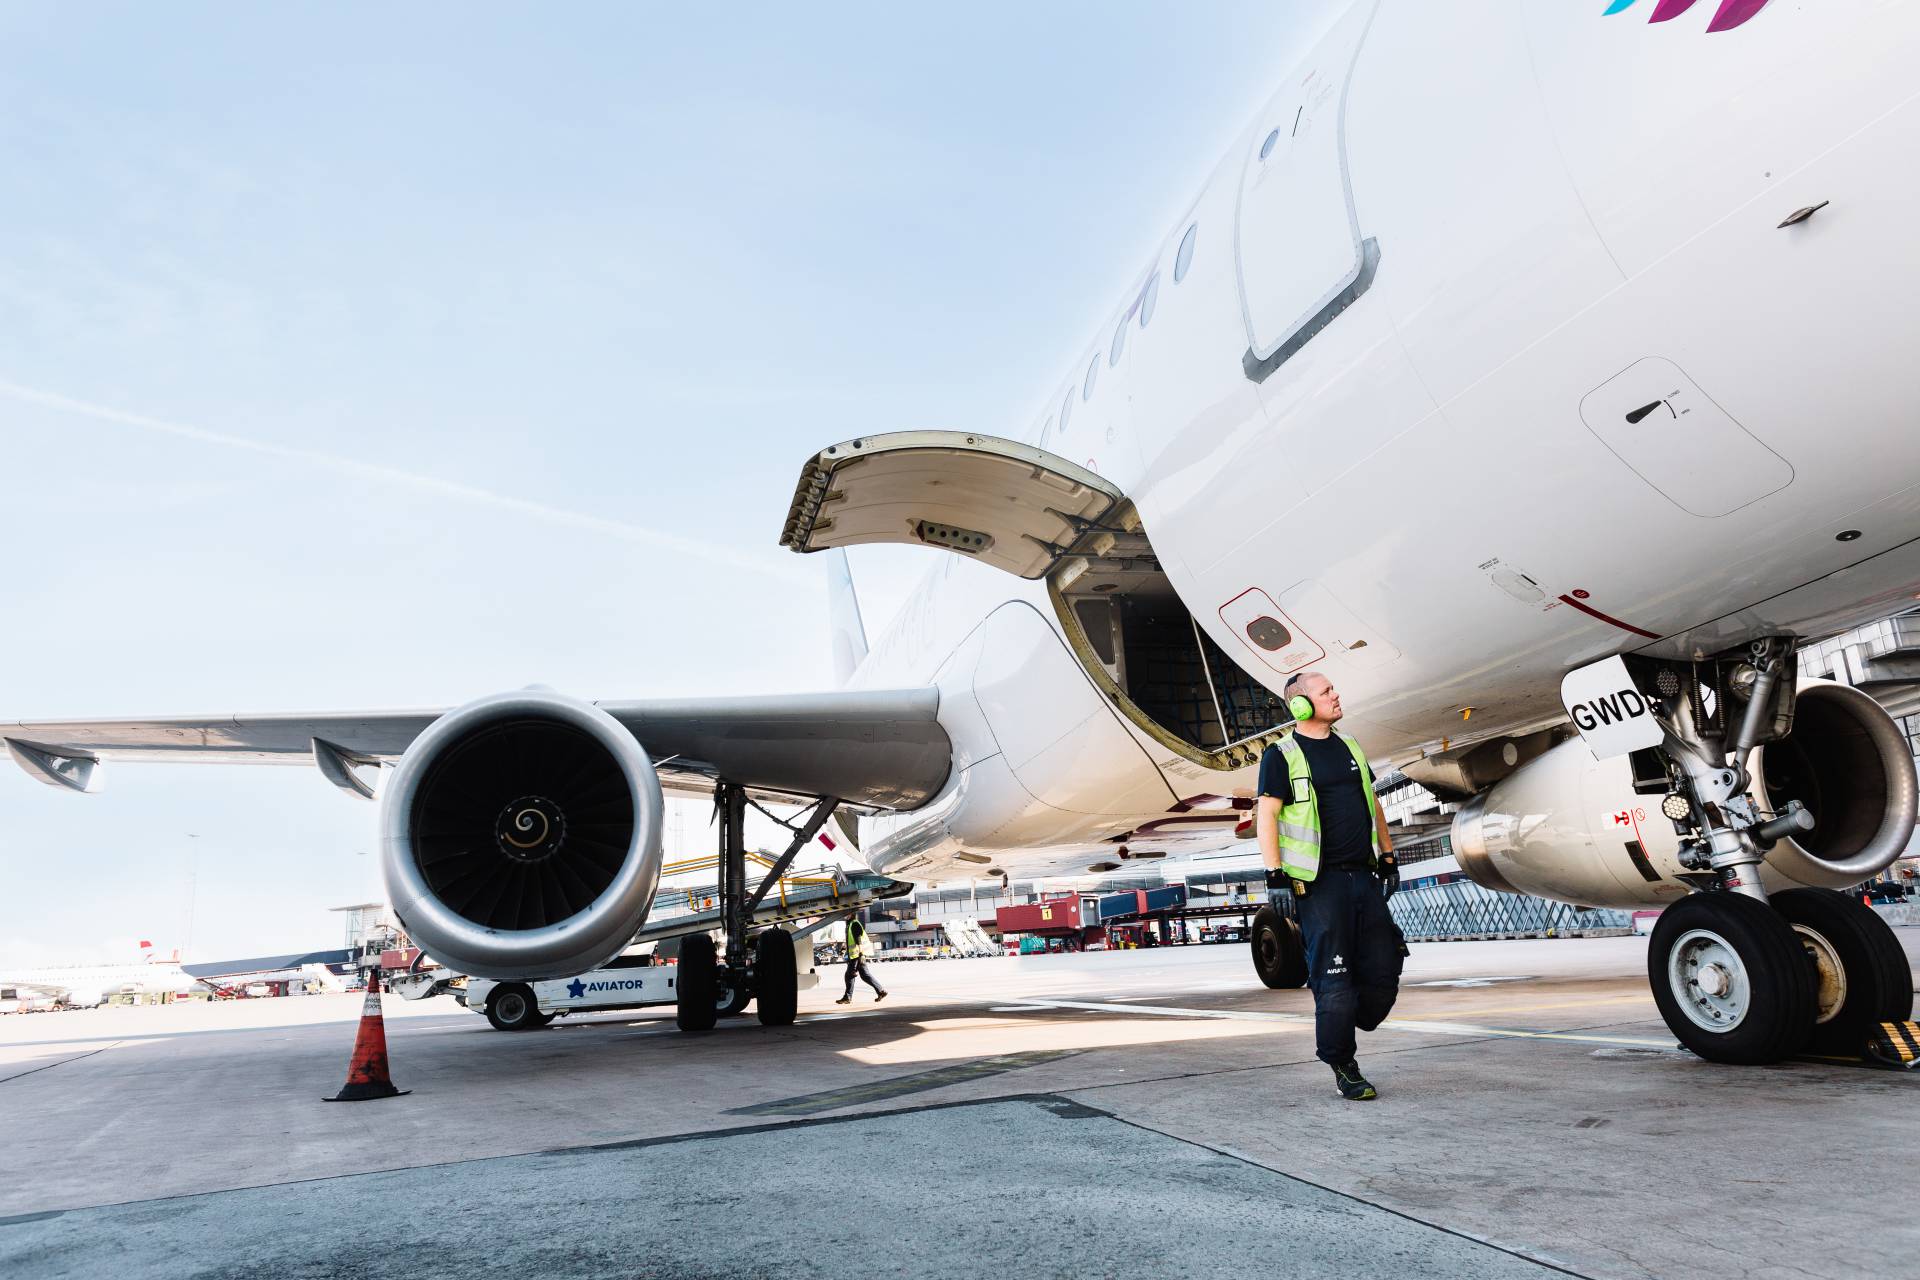 סוכן הטיפול Aviator מרחיב את השותפות עם Finnair ל-5 שנים נוספות בנמל התעופה של הלסינקי